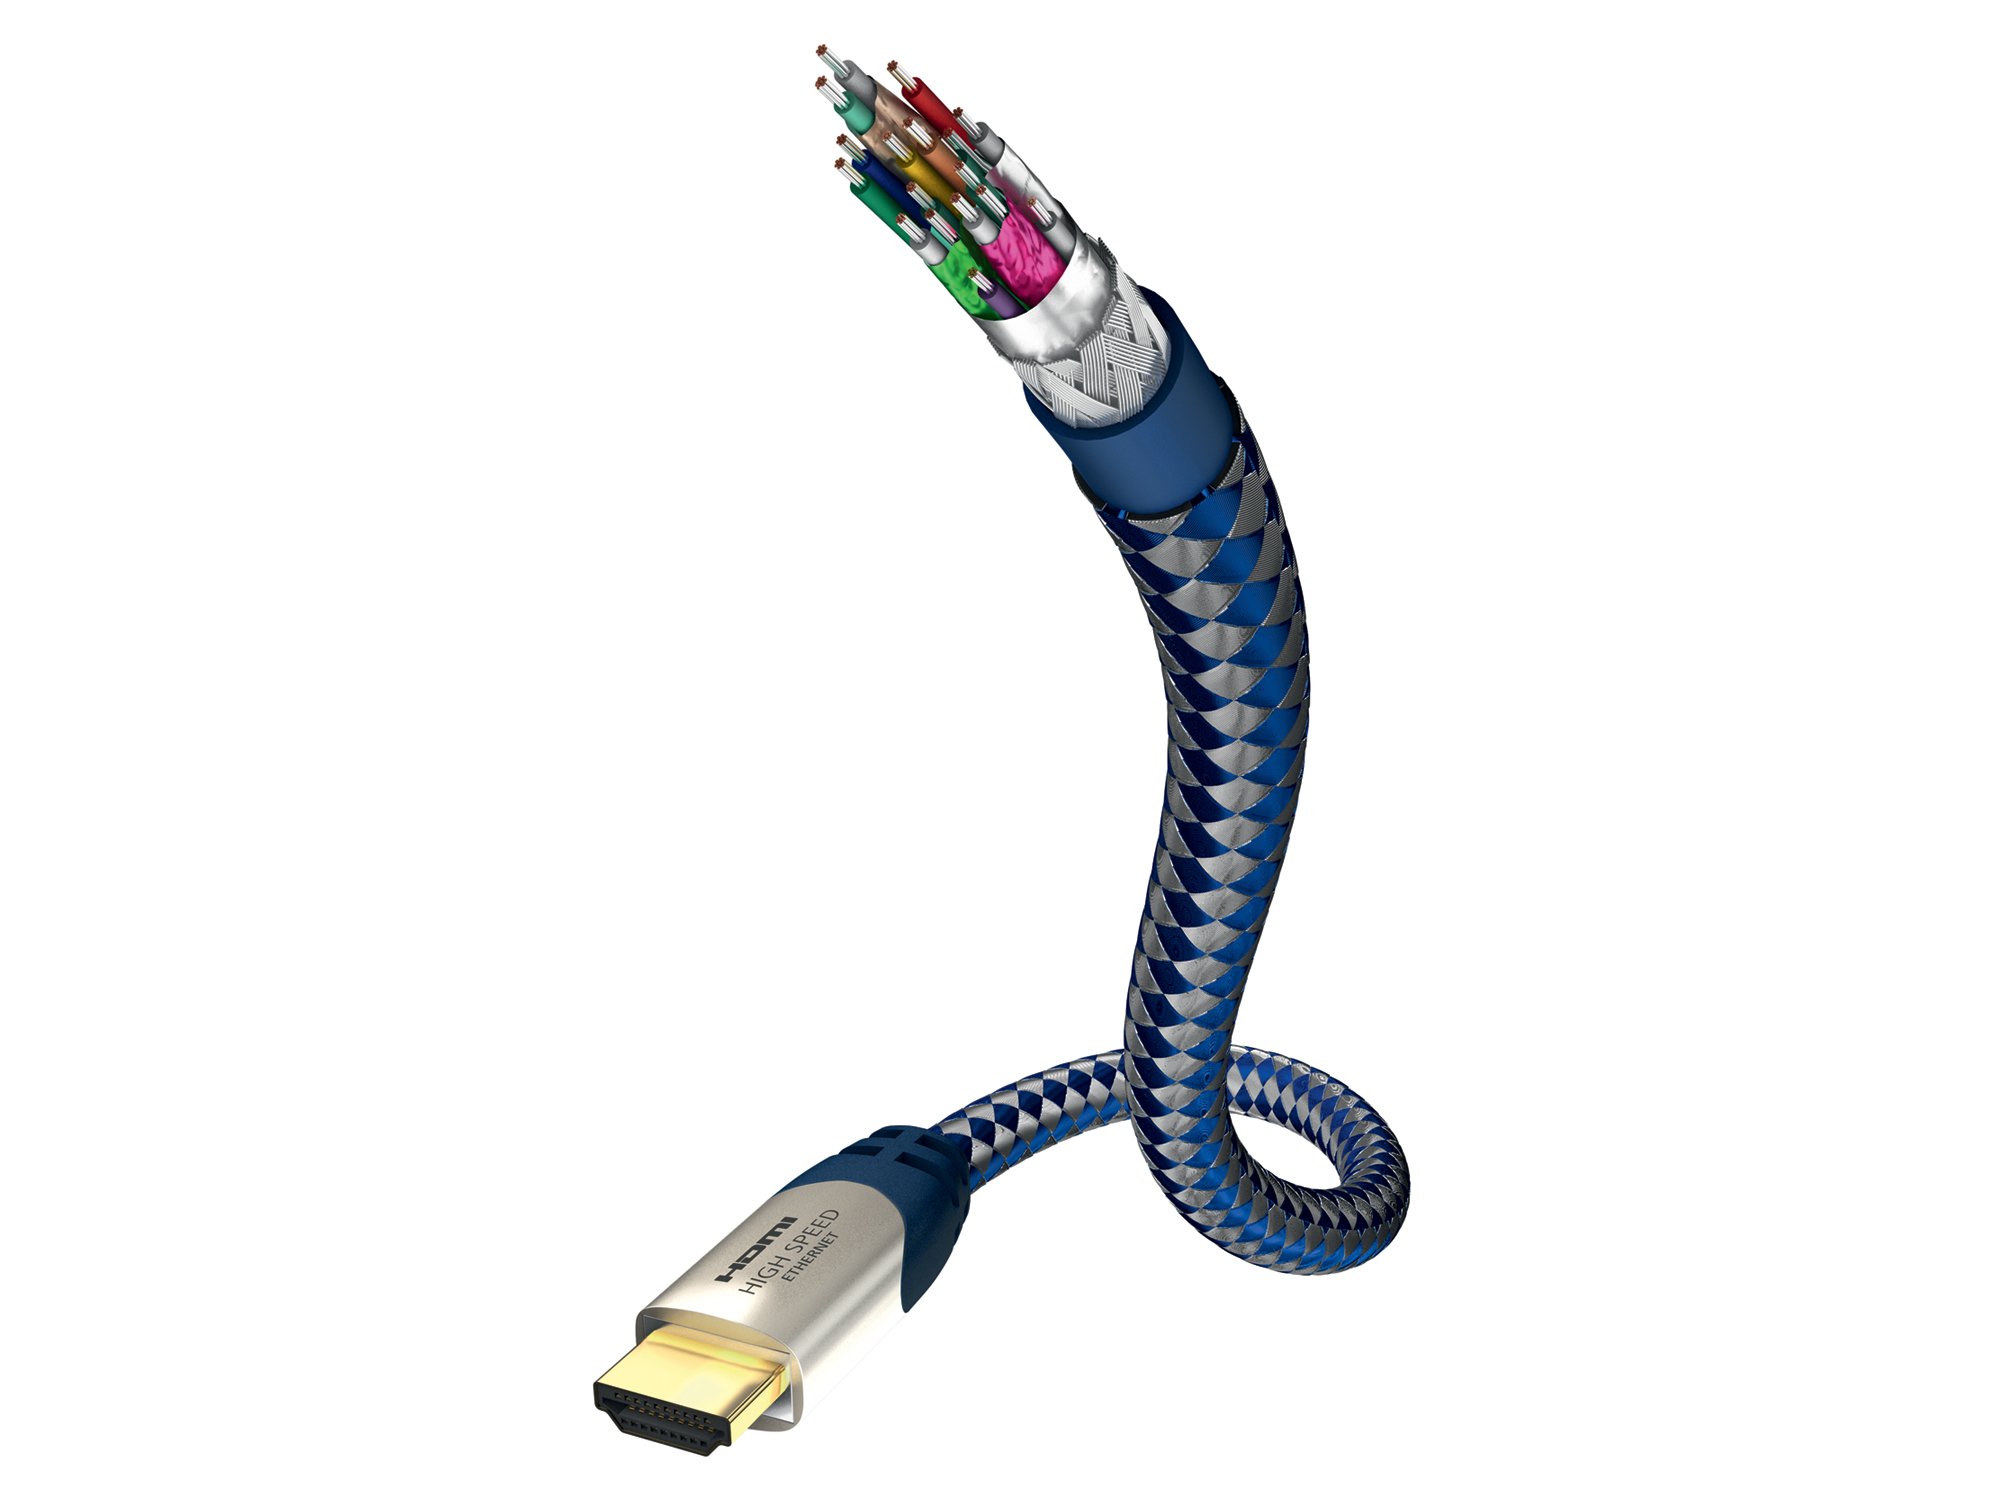 inakustik – 0042310 – Premium Standard HDMI Kabel mit Ethernet | Für die Übertragung von Ultra HD Signalen | 10m in Blau | 2160p - 4K 25/30Hz - Audio Return Channel - HD-Audio